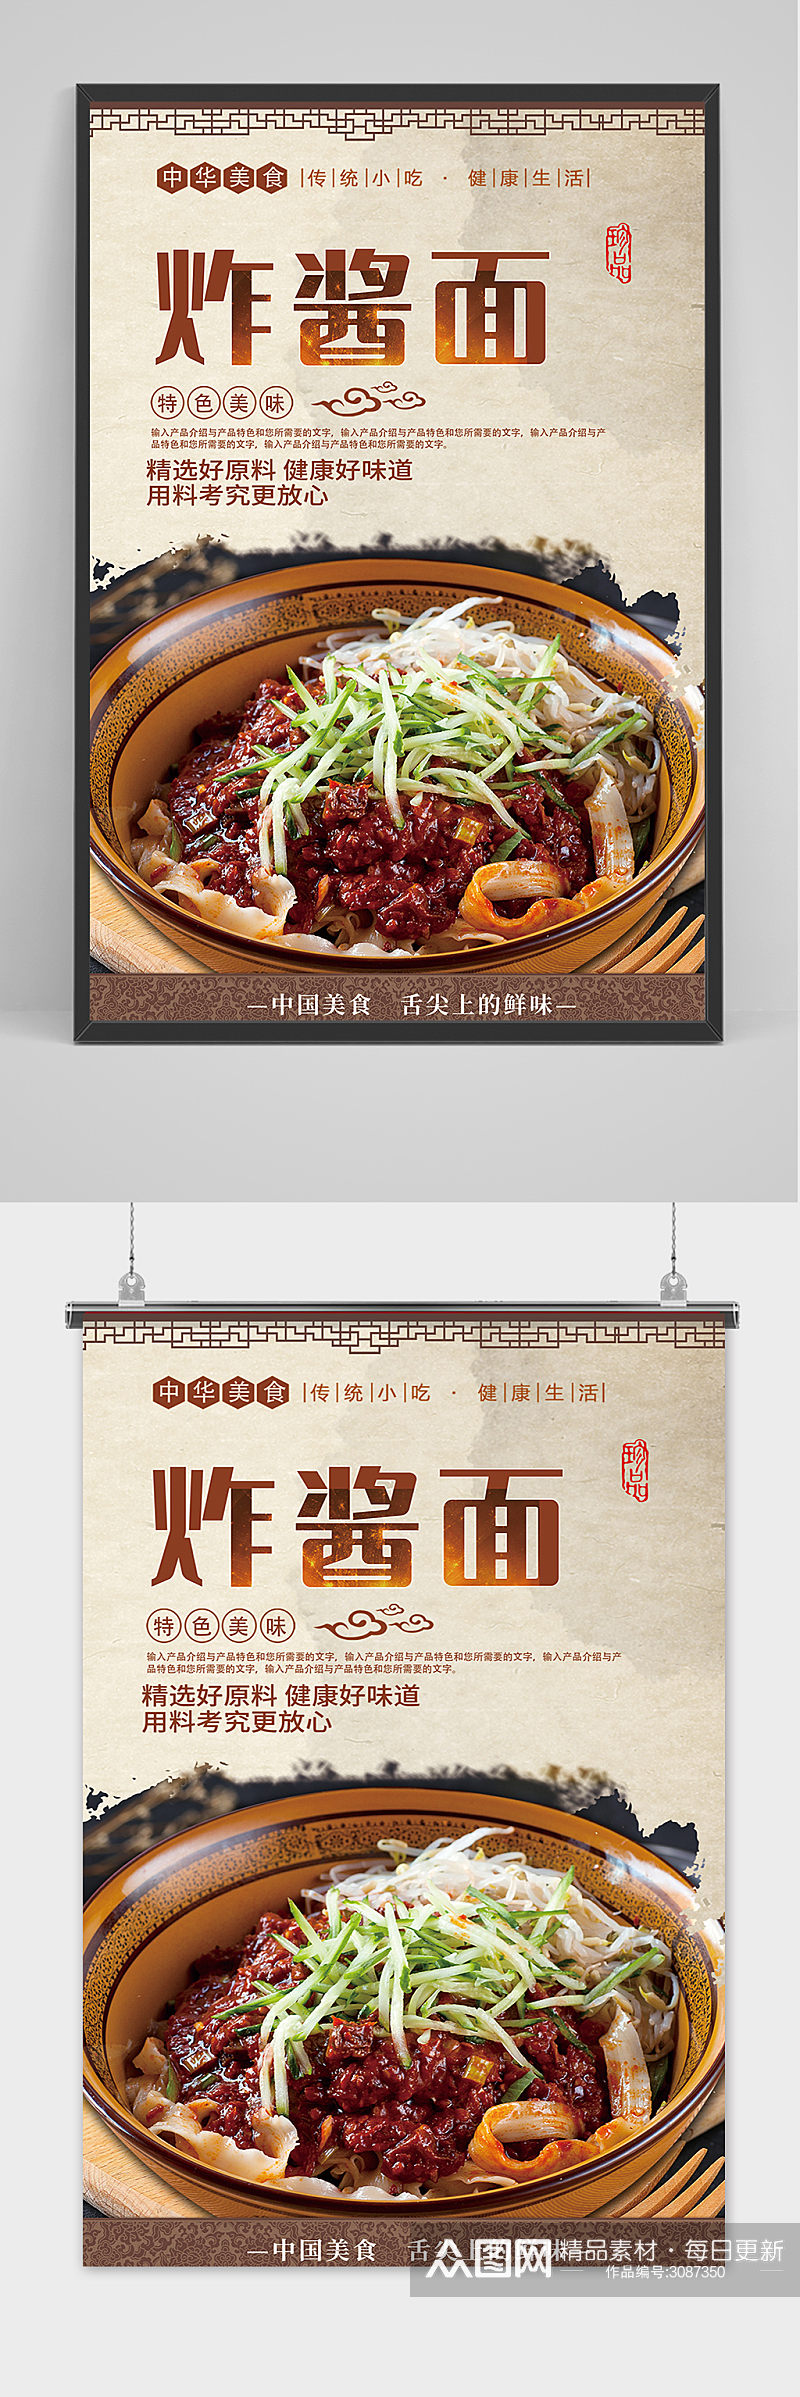 创意中国风美食炸酱面海报素材